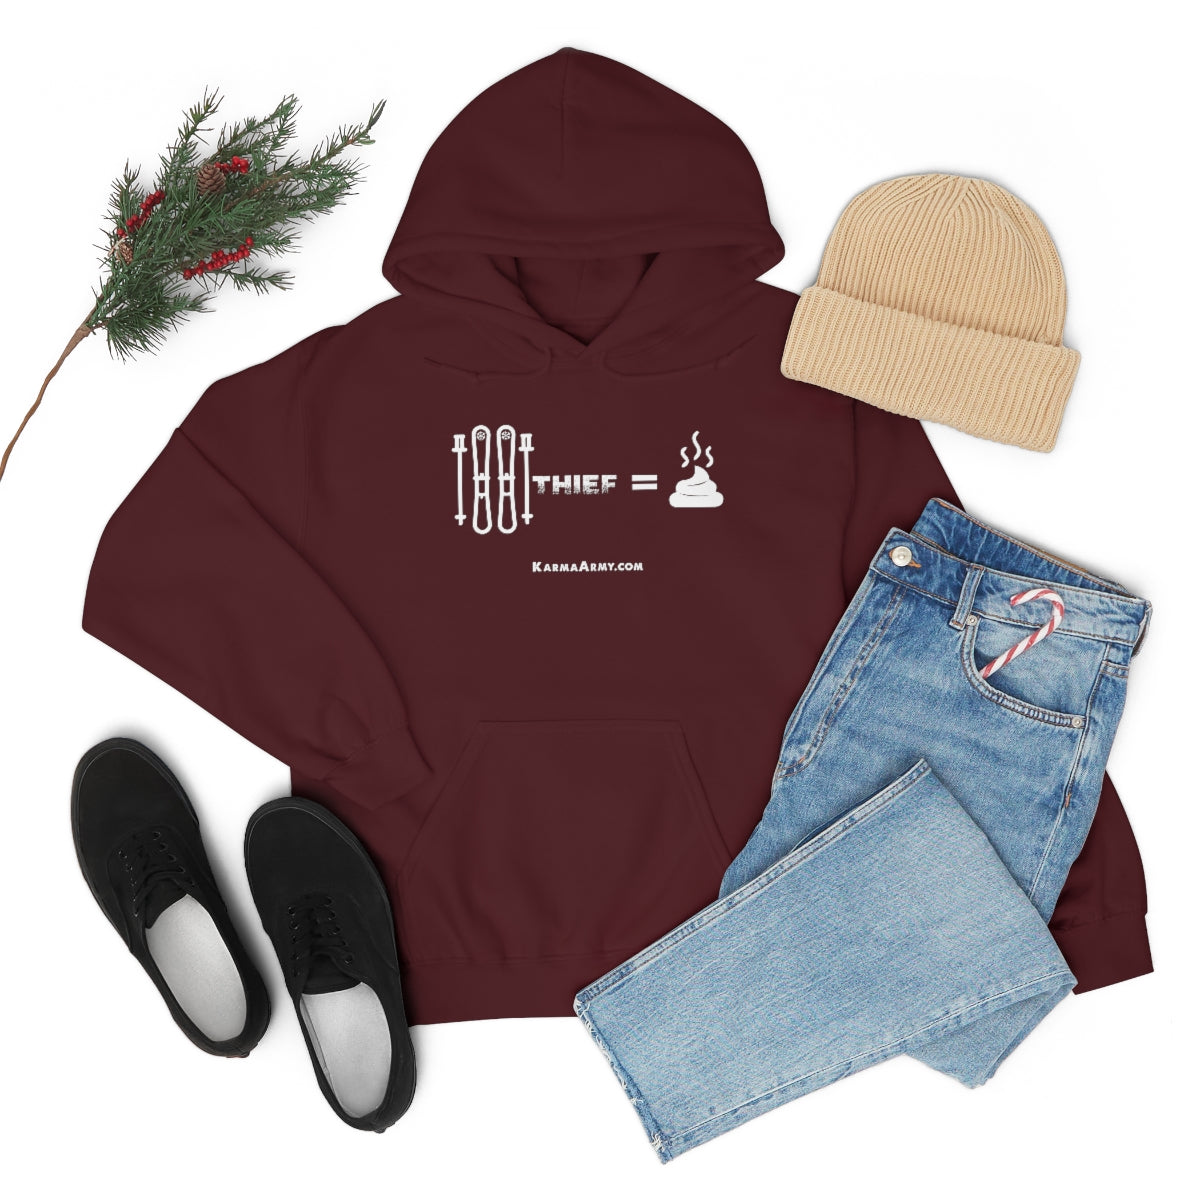 Ski Thief = Poop Unisex Heavy Blend™ Hooded Sweatshirt